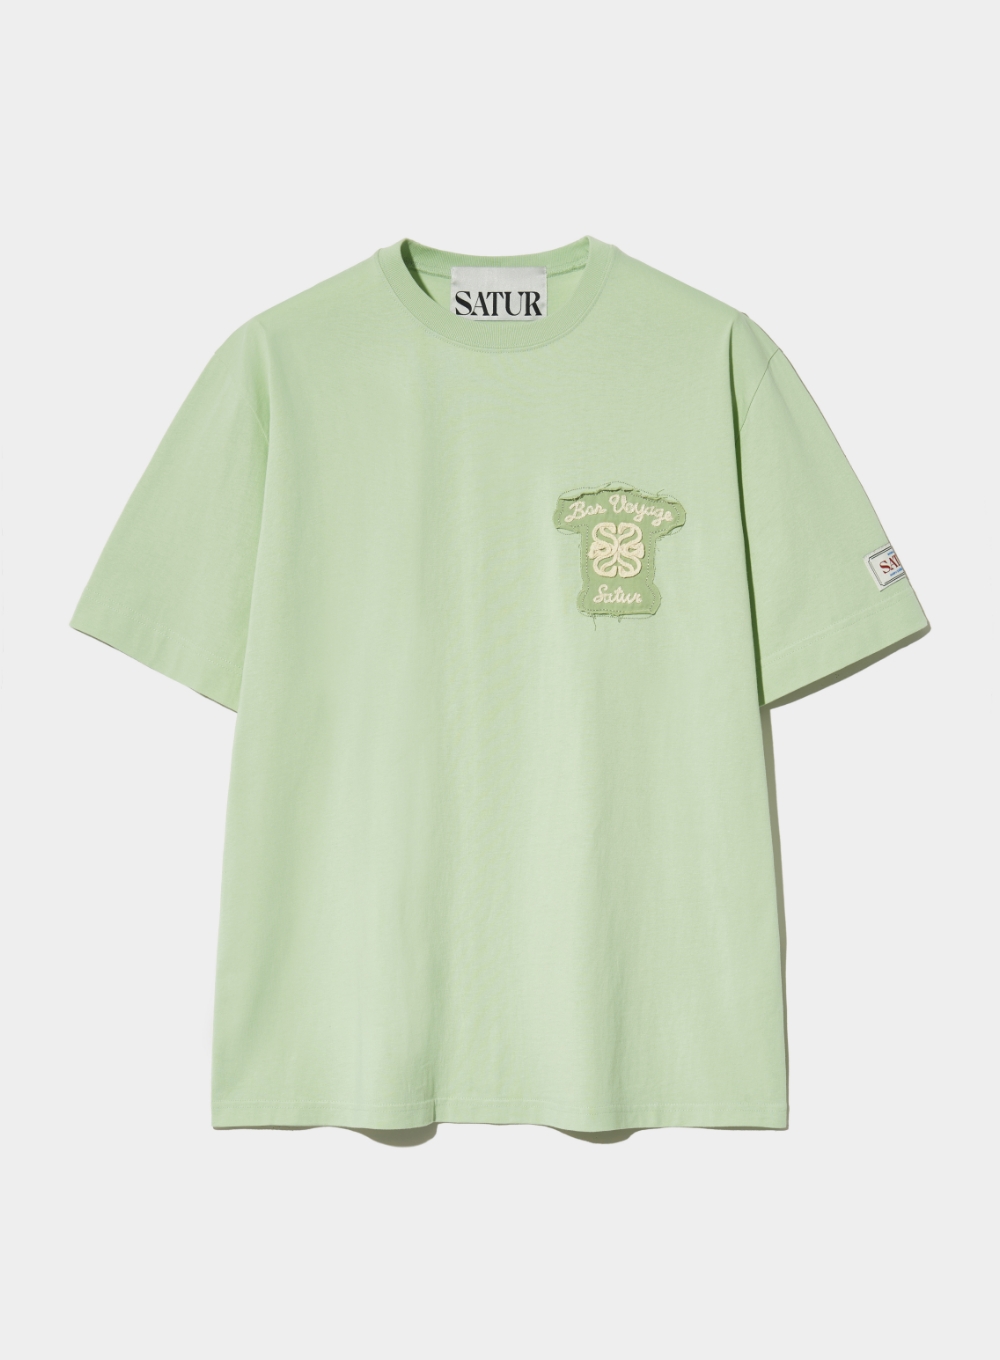 Bon Voyage Raw-Cut Applique T-Shirt - Celadon Mint